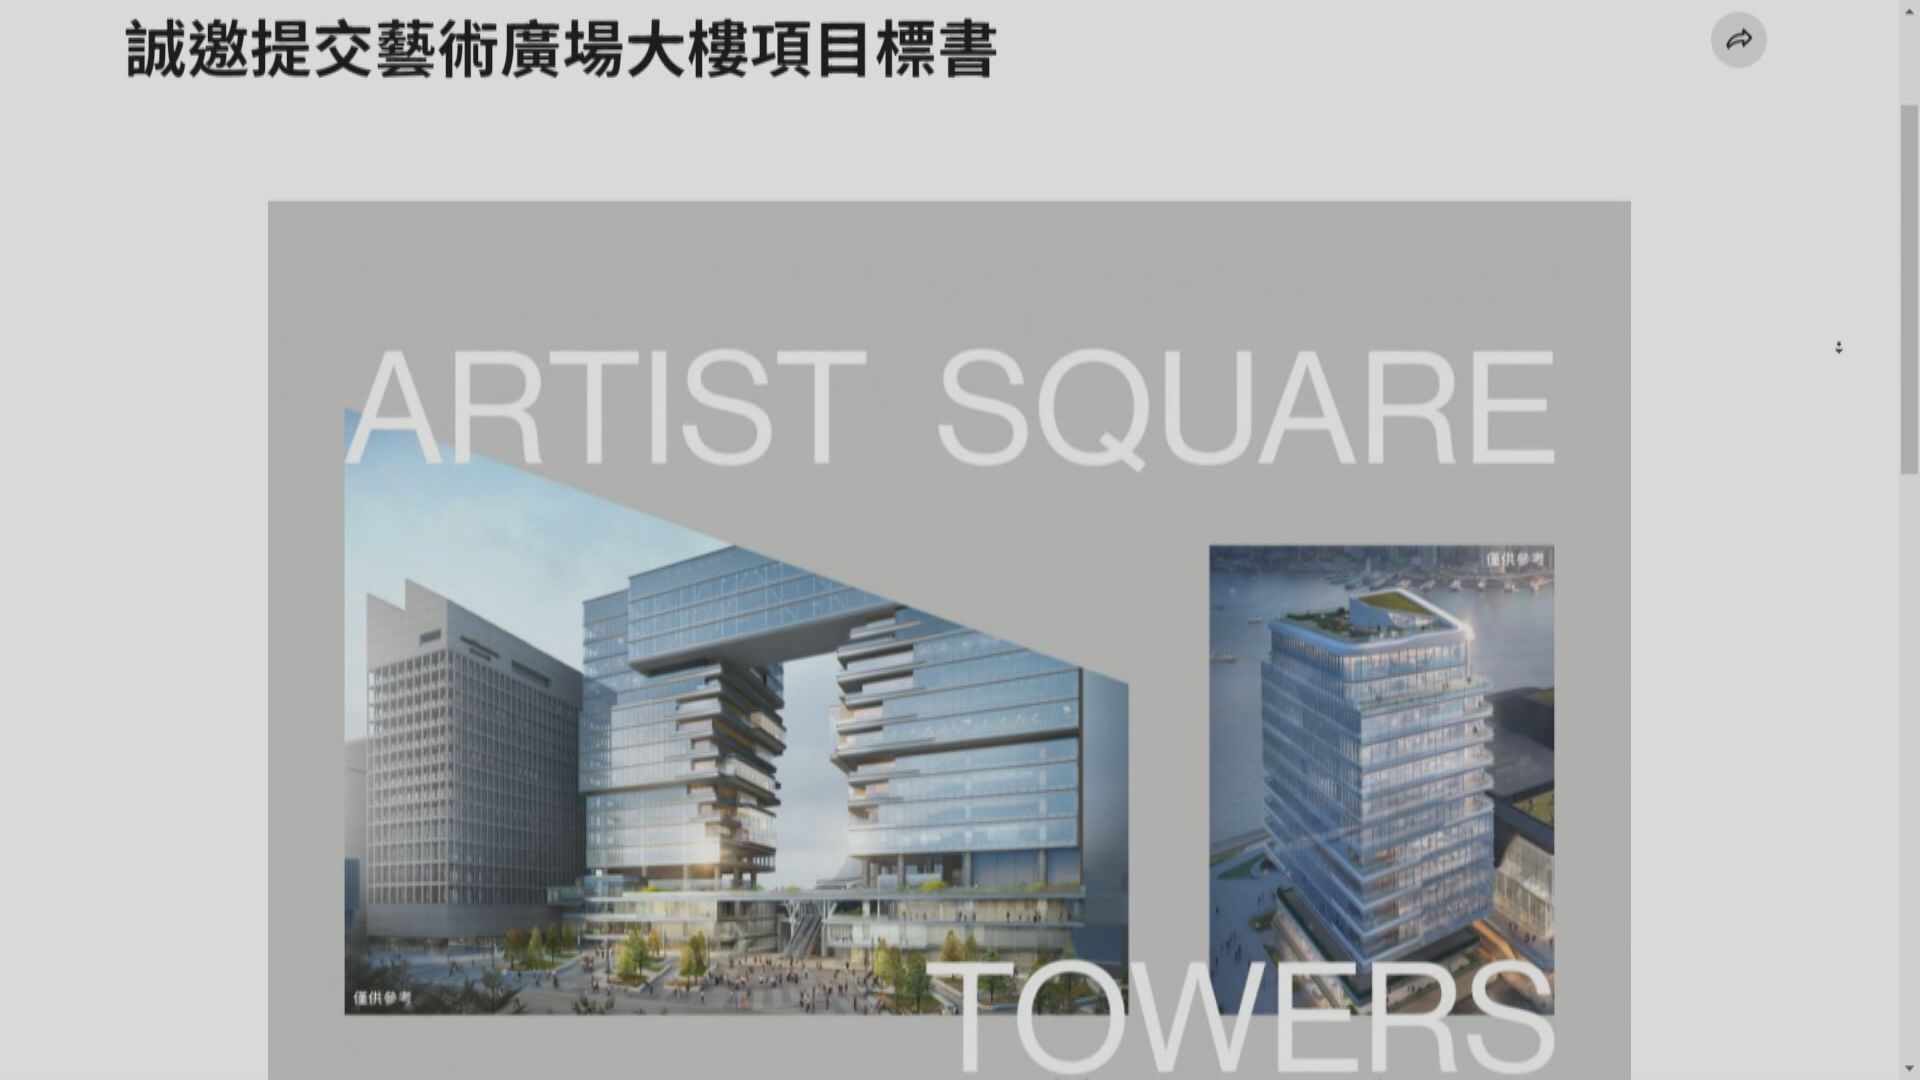 【「11‧14」截標】西九藝術廣場大樓再招標 營運權增至47年